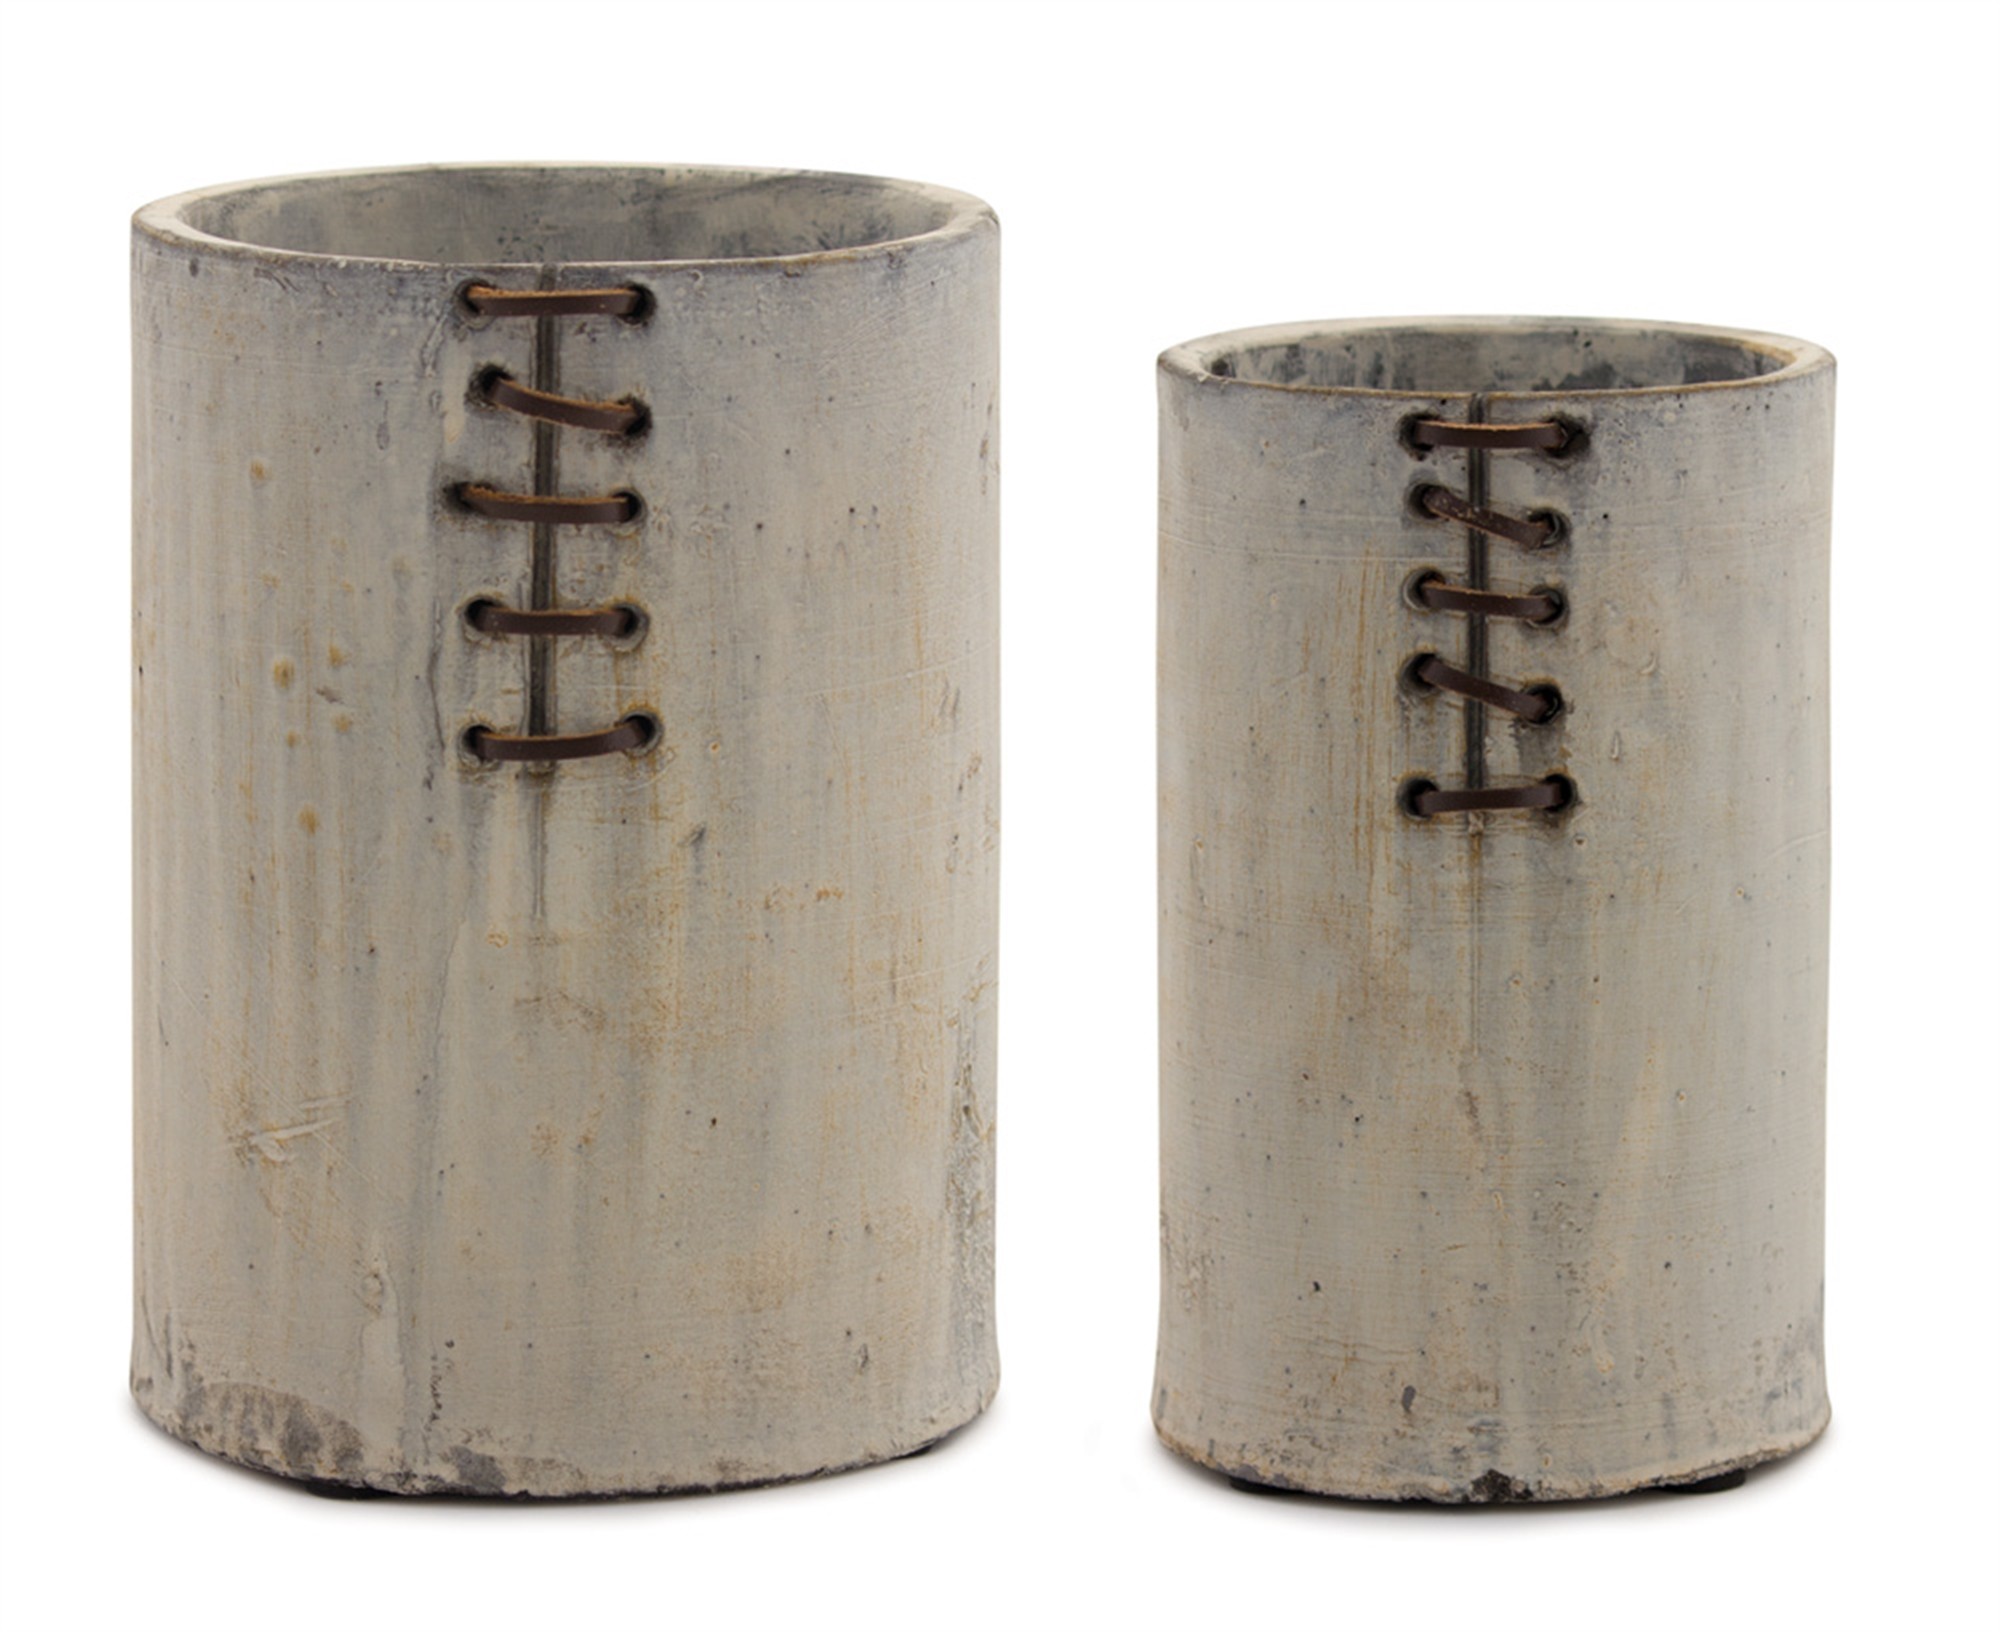 Vase (Set of 4) 4.25" x 7"H, 5.75" x 7.75"H Terra Cotta